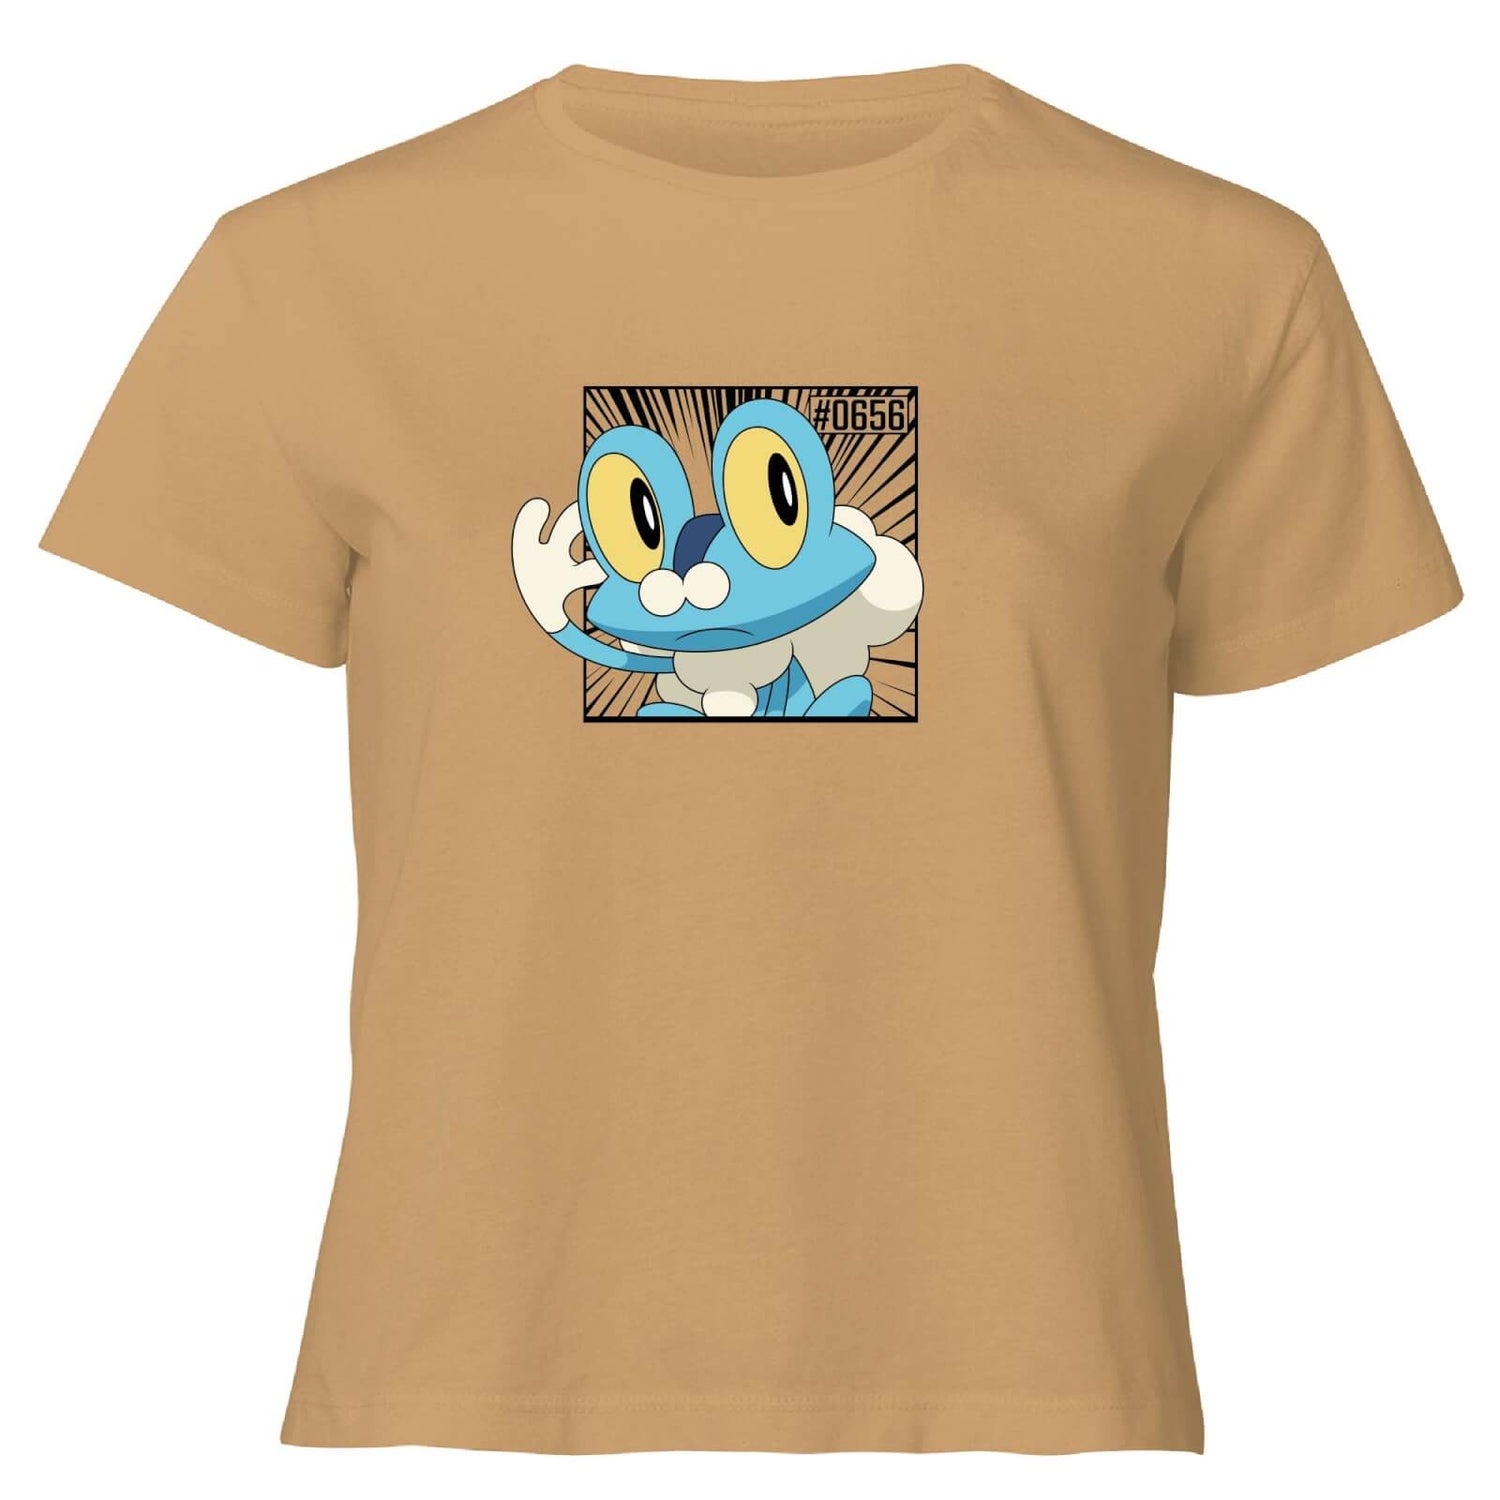 Pokemon Froakie Women's Cropped T-Shirt - Tan